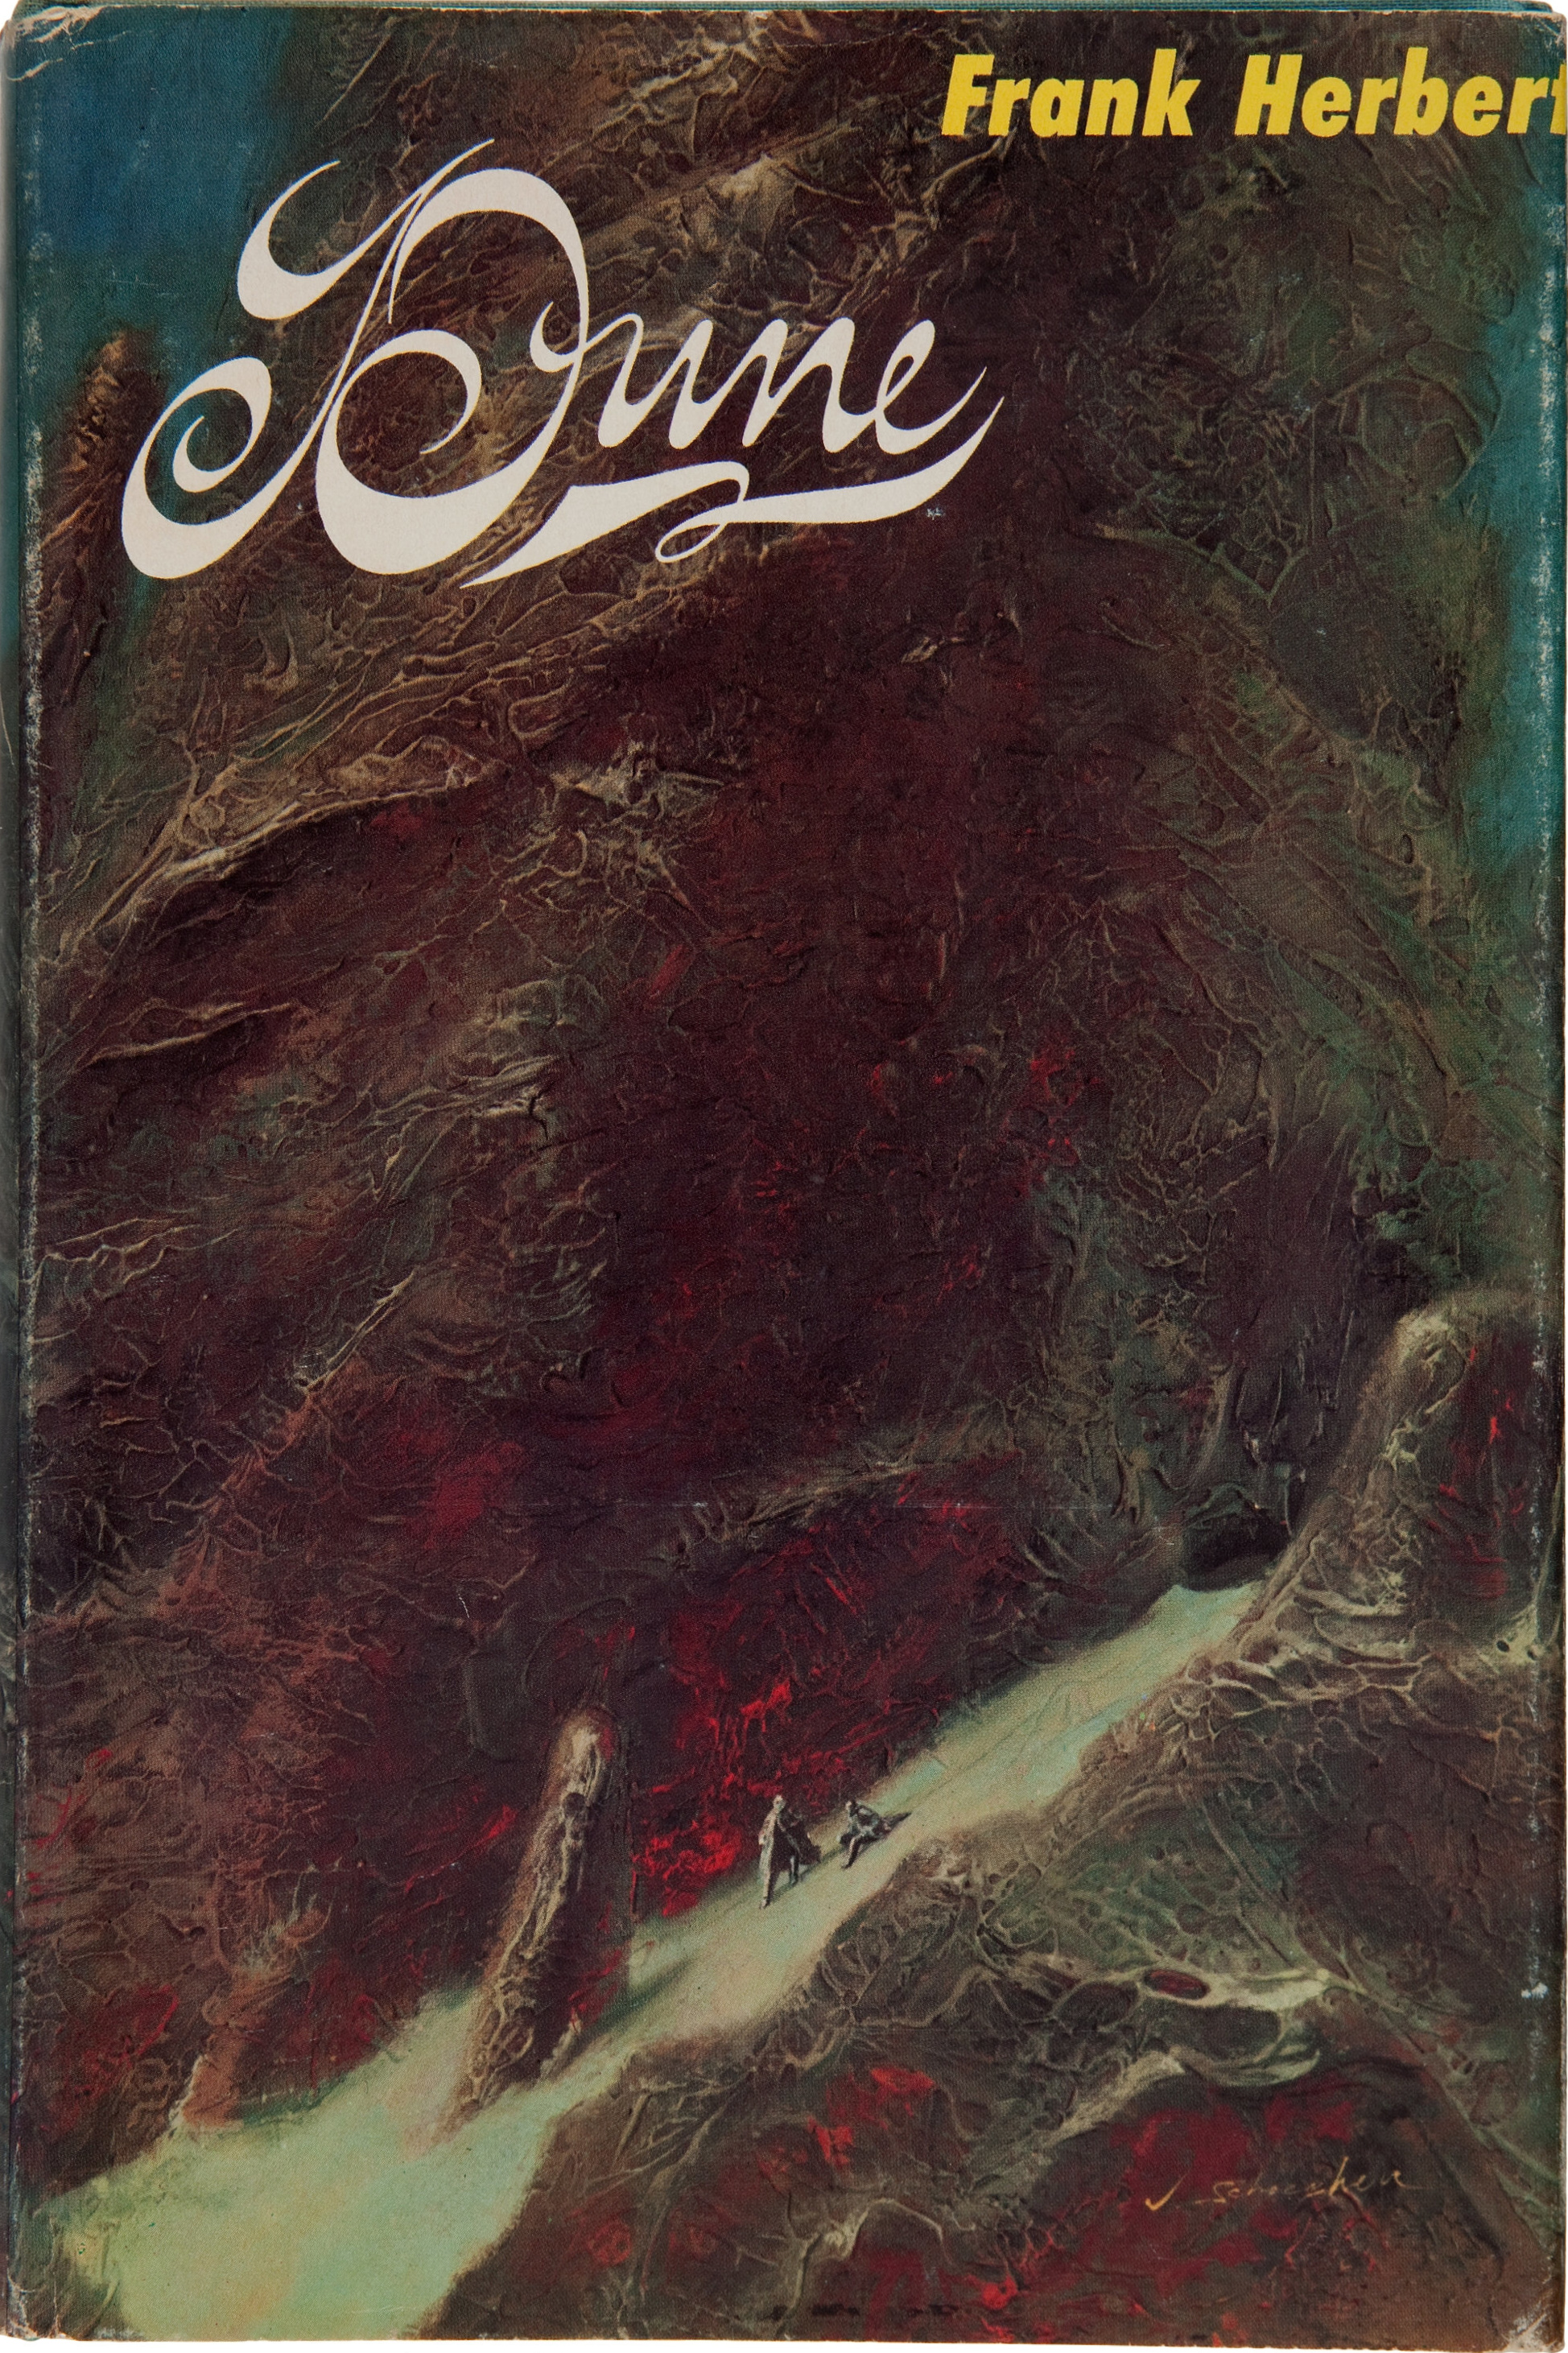 Frank Herbert: Dune (Hardcover, 1965, Chilton)